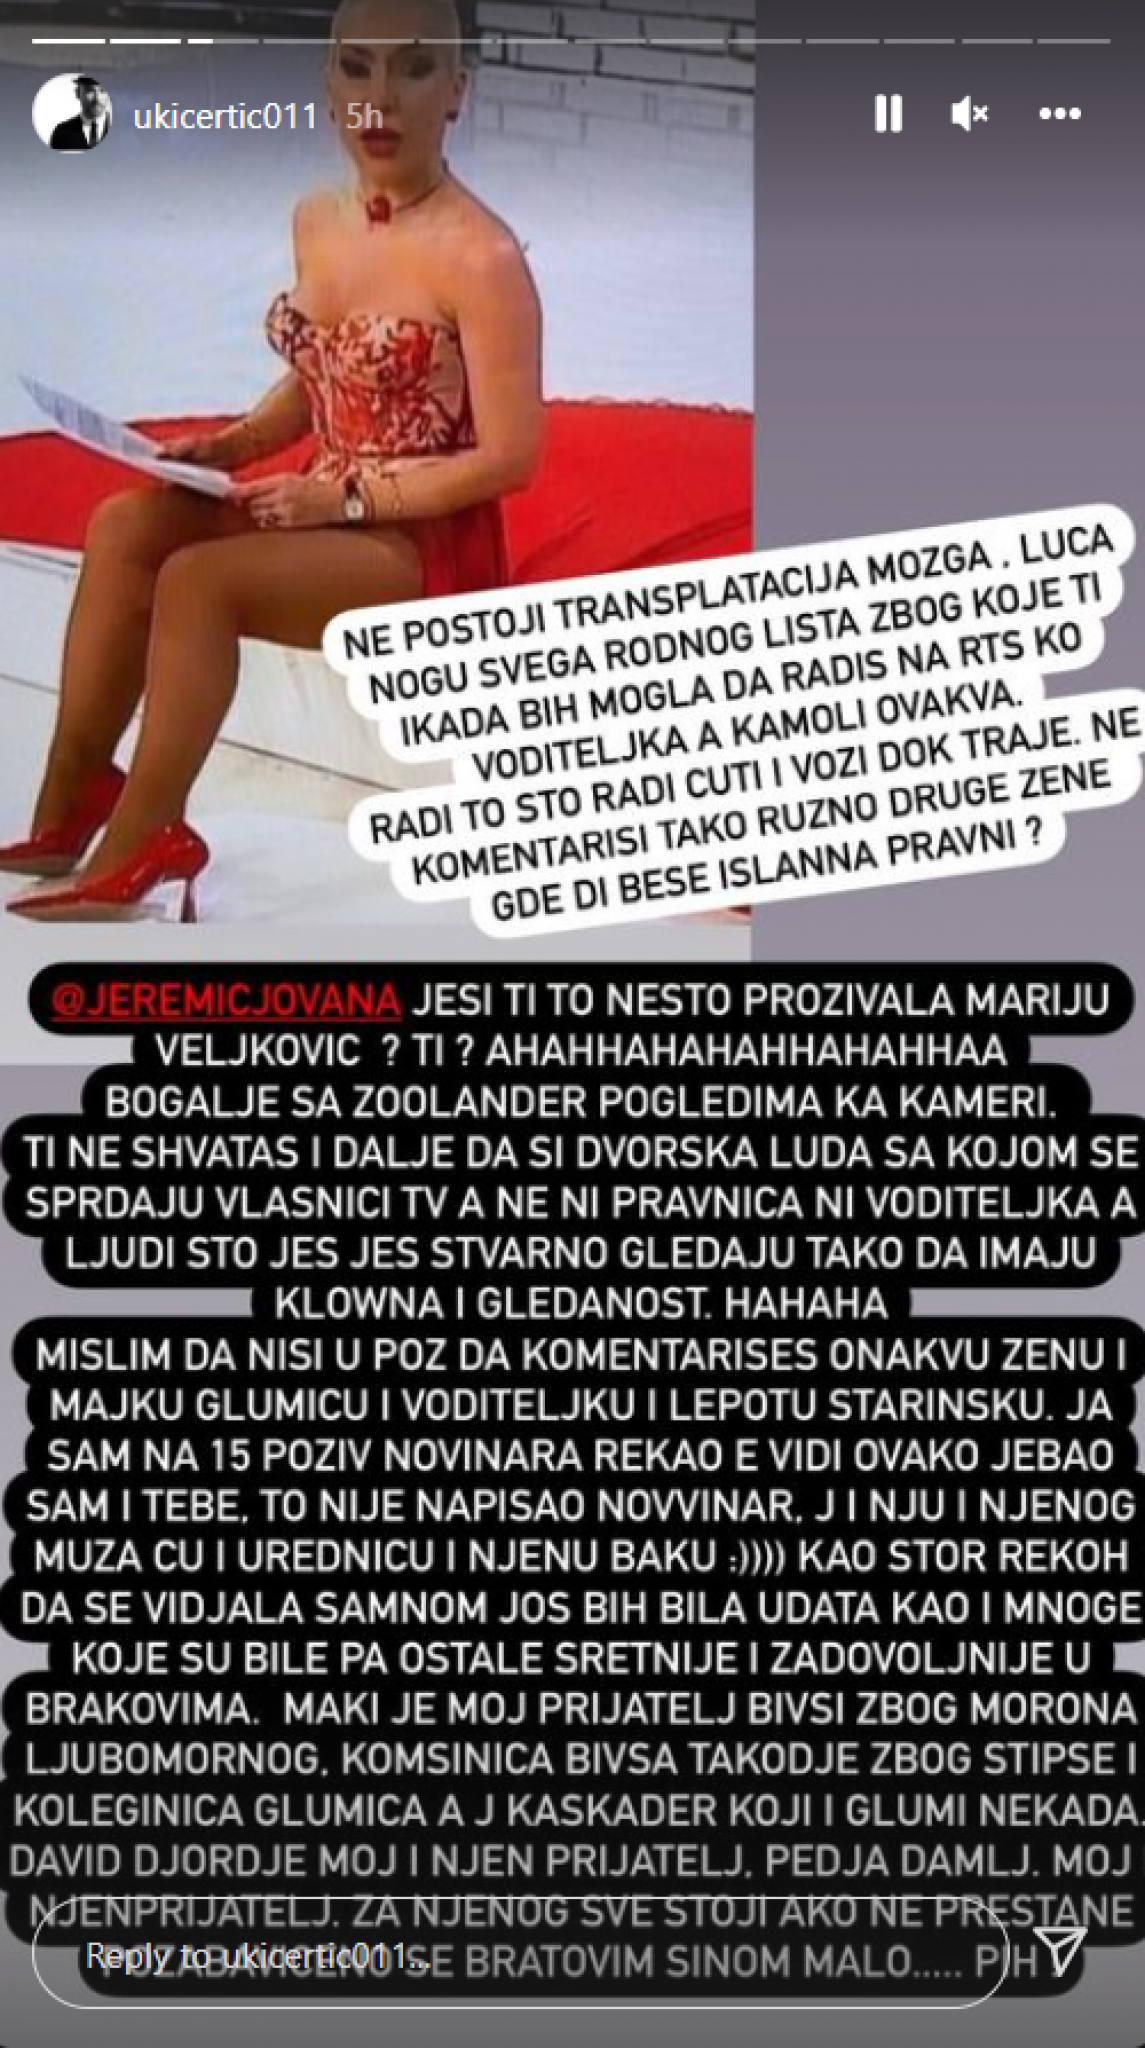 TI SI DVORSKA LUDA, A NE PRAVNICA I VODITELJKA Uroš Ćertić brutalno izvređao Jovanu zbog Marije Veljković (FOTO)